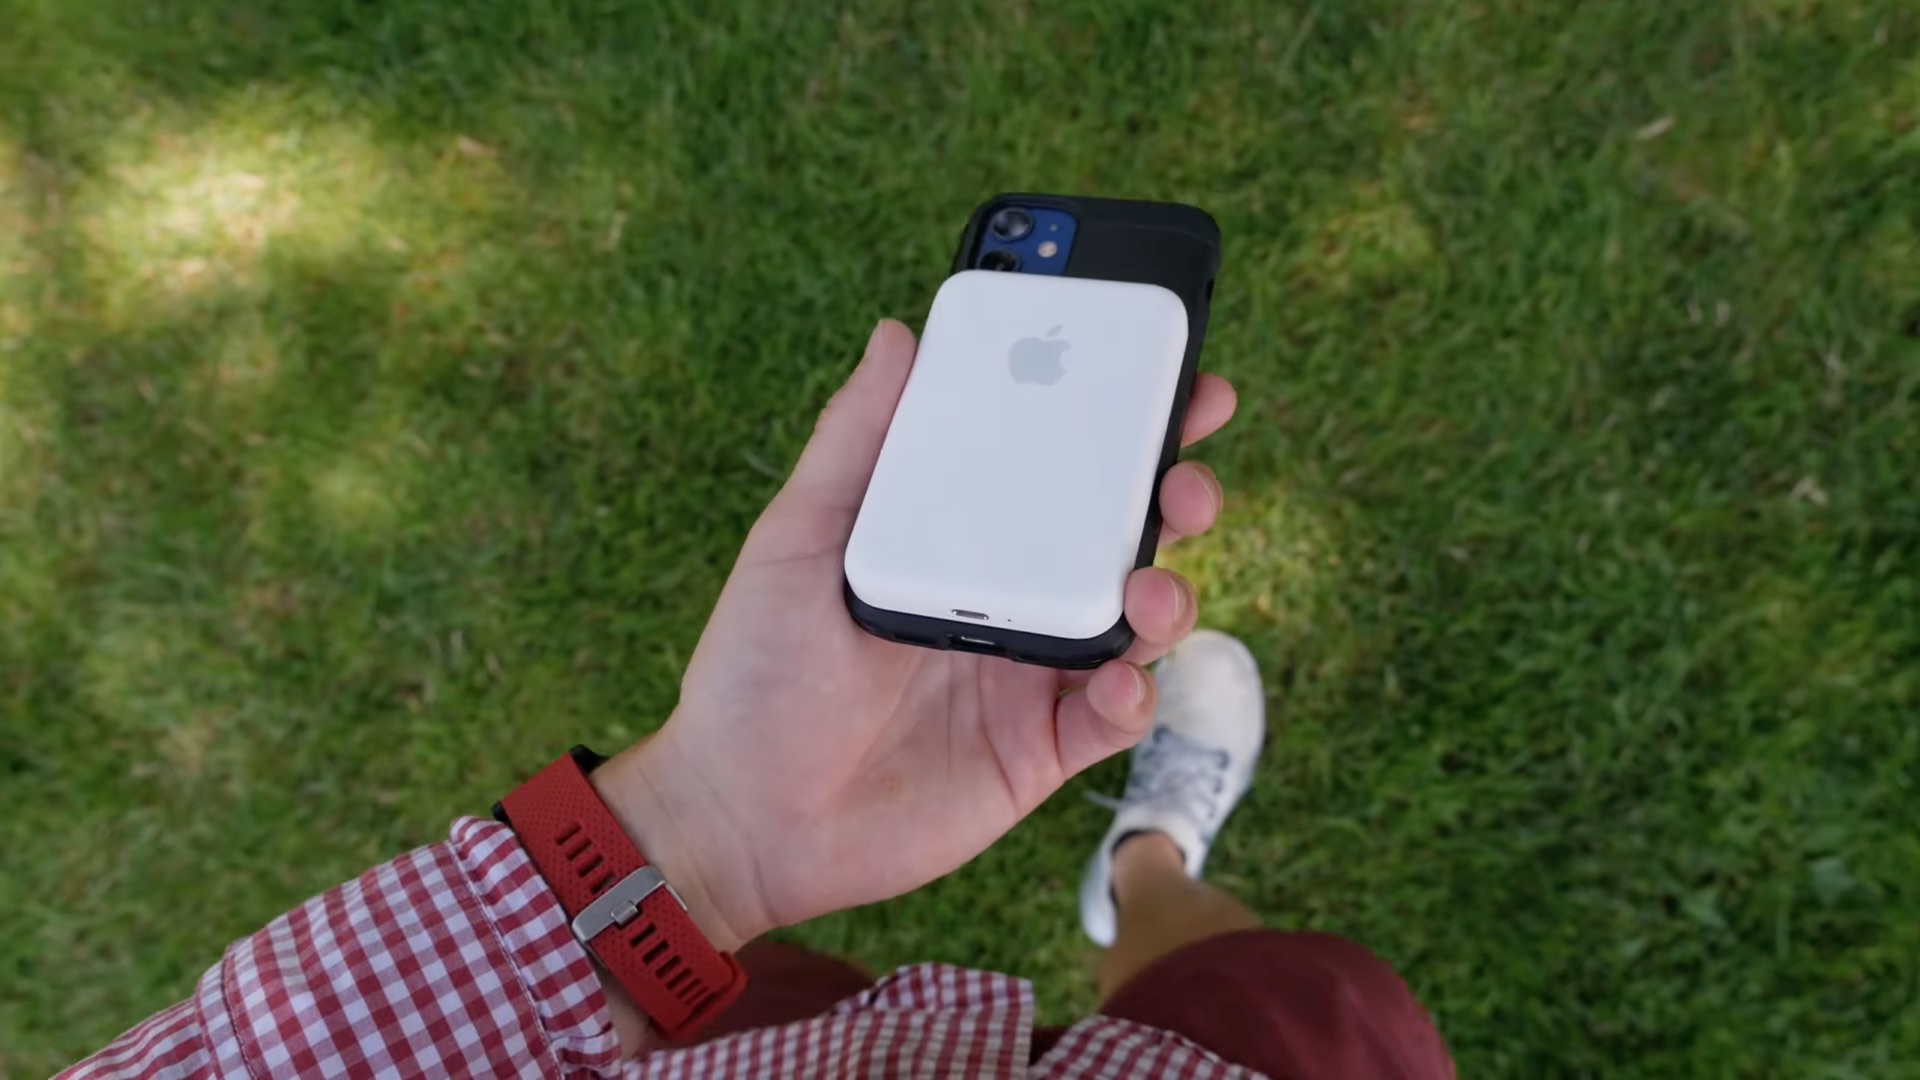 يُرى MagSafe Battery Pack من Apple عالقة في الجزء الخلفي من جهاز iPhone ، والذي يستريح في راحة يد شاب ، في هذه الصورة الثابتة المأخوذة من مراجعة فيديو iDB للملحق